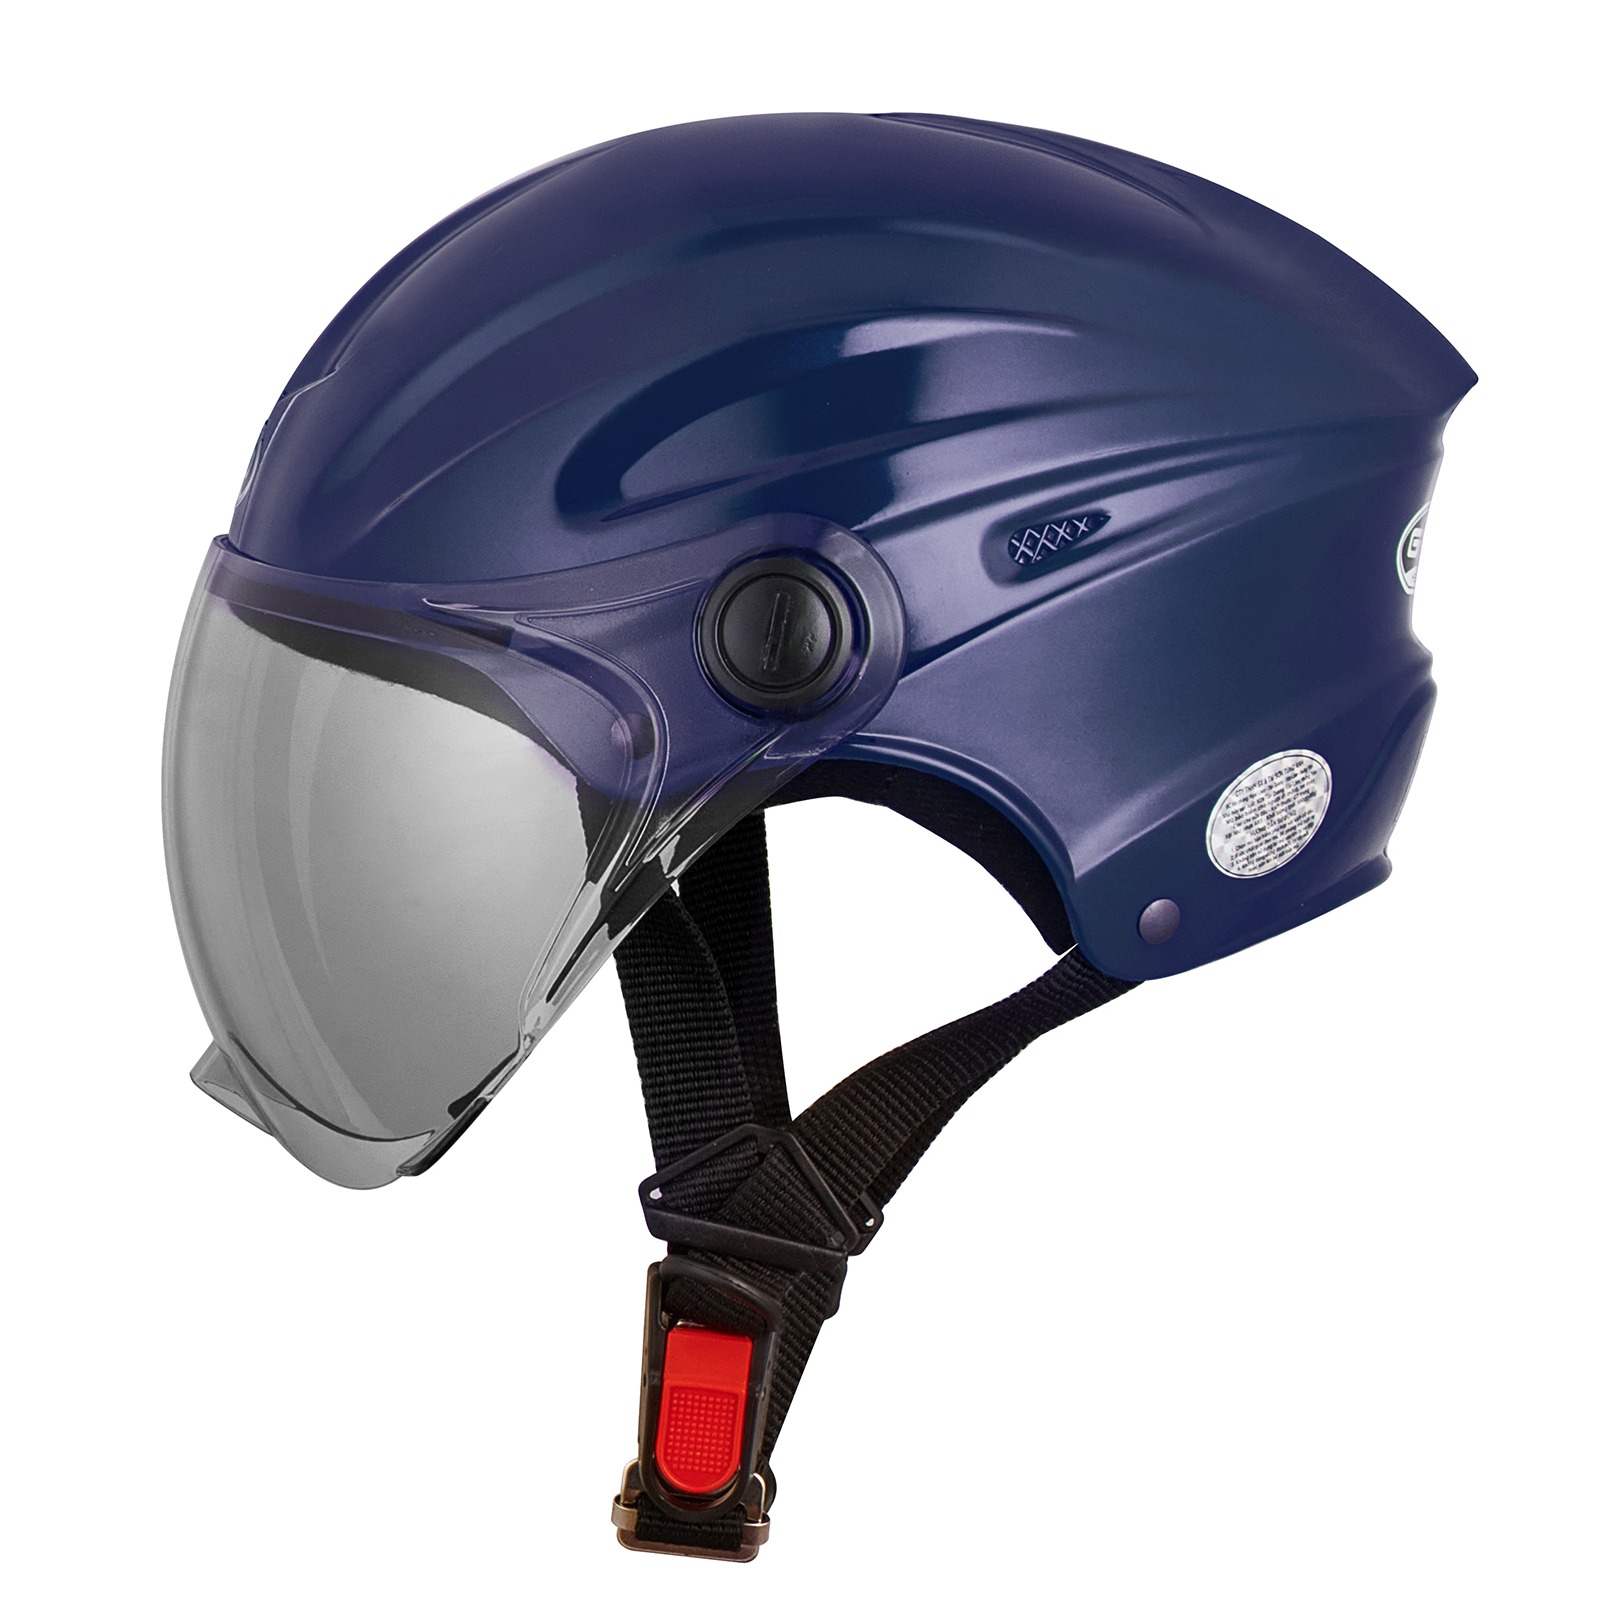 Mũ bảo hiểm nửa đầu có kính ngắn GRO ST22 free size nón bảo hiểm dáng thể thao mạnh mẽ cho nam và nữ - Hàng chính hãng